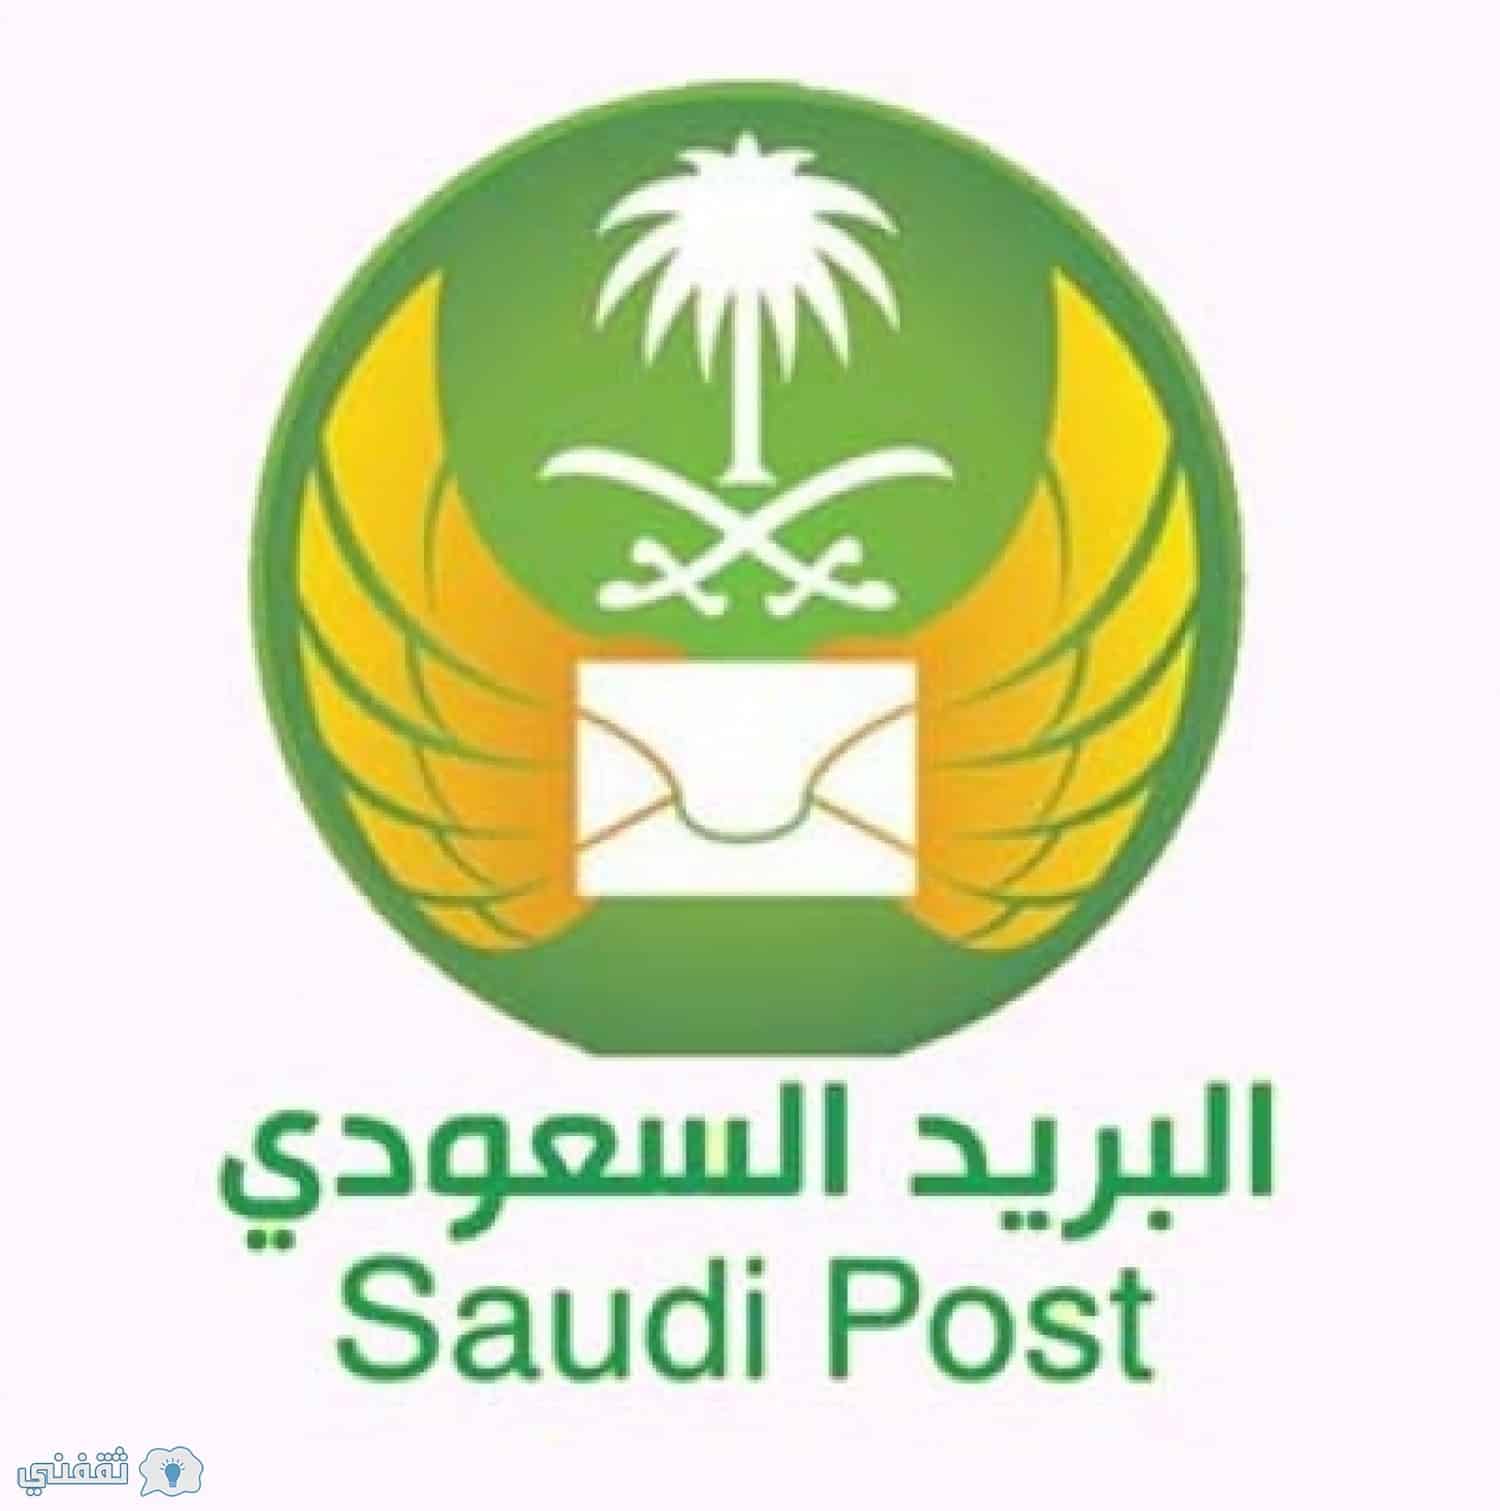 وظائف البريد السعودي 2019 من الجنسين مع رابط طاقات للتسجيل الإلكتروني برنامج تمهير